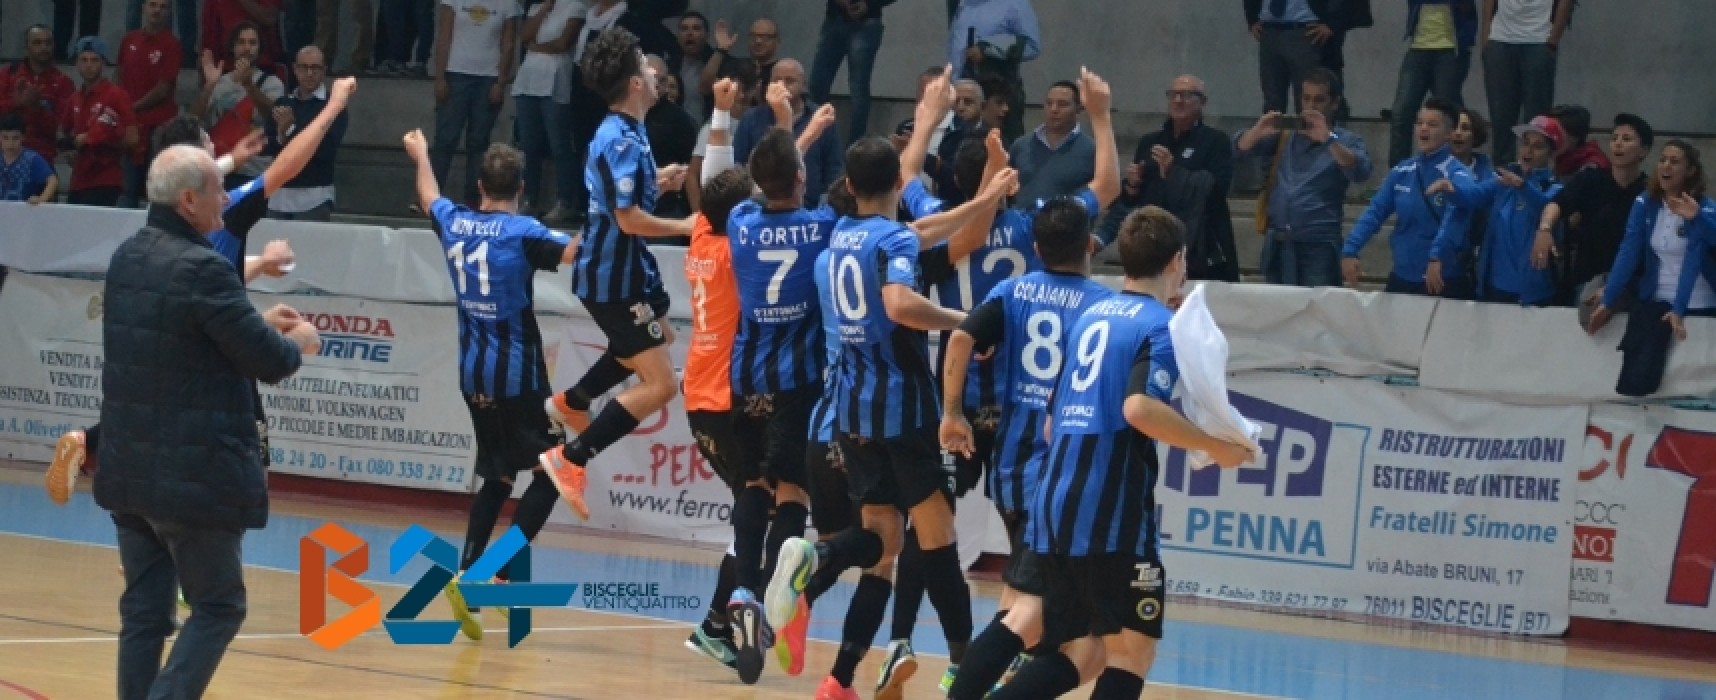 Futsal Bisceglie: buona anche la seconda, Policoro sconfitto 4-3